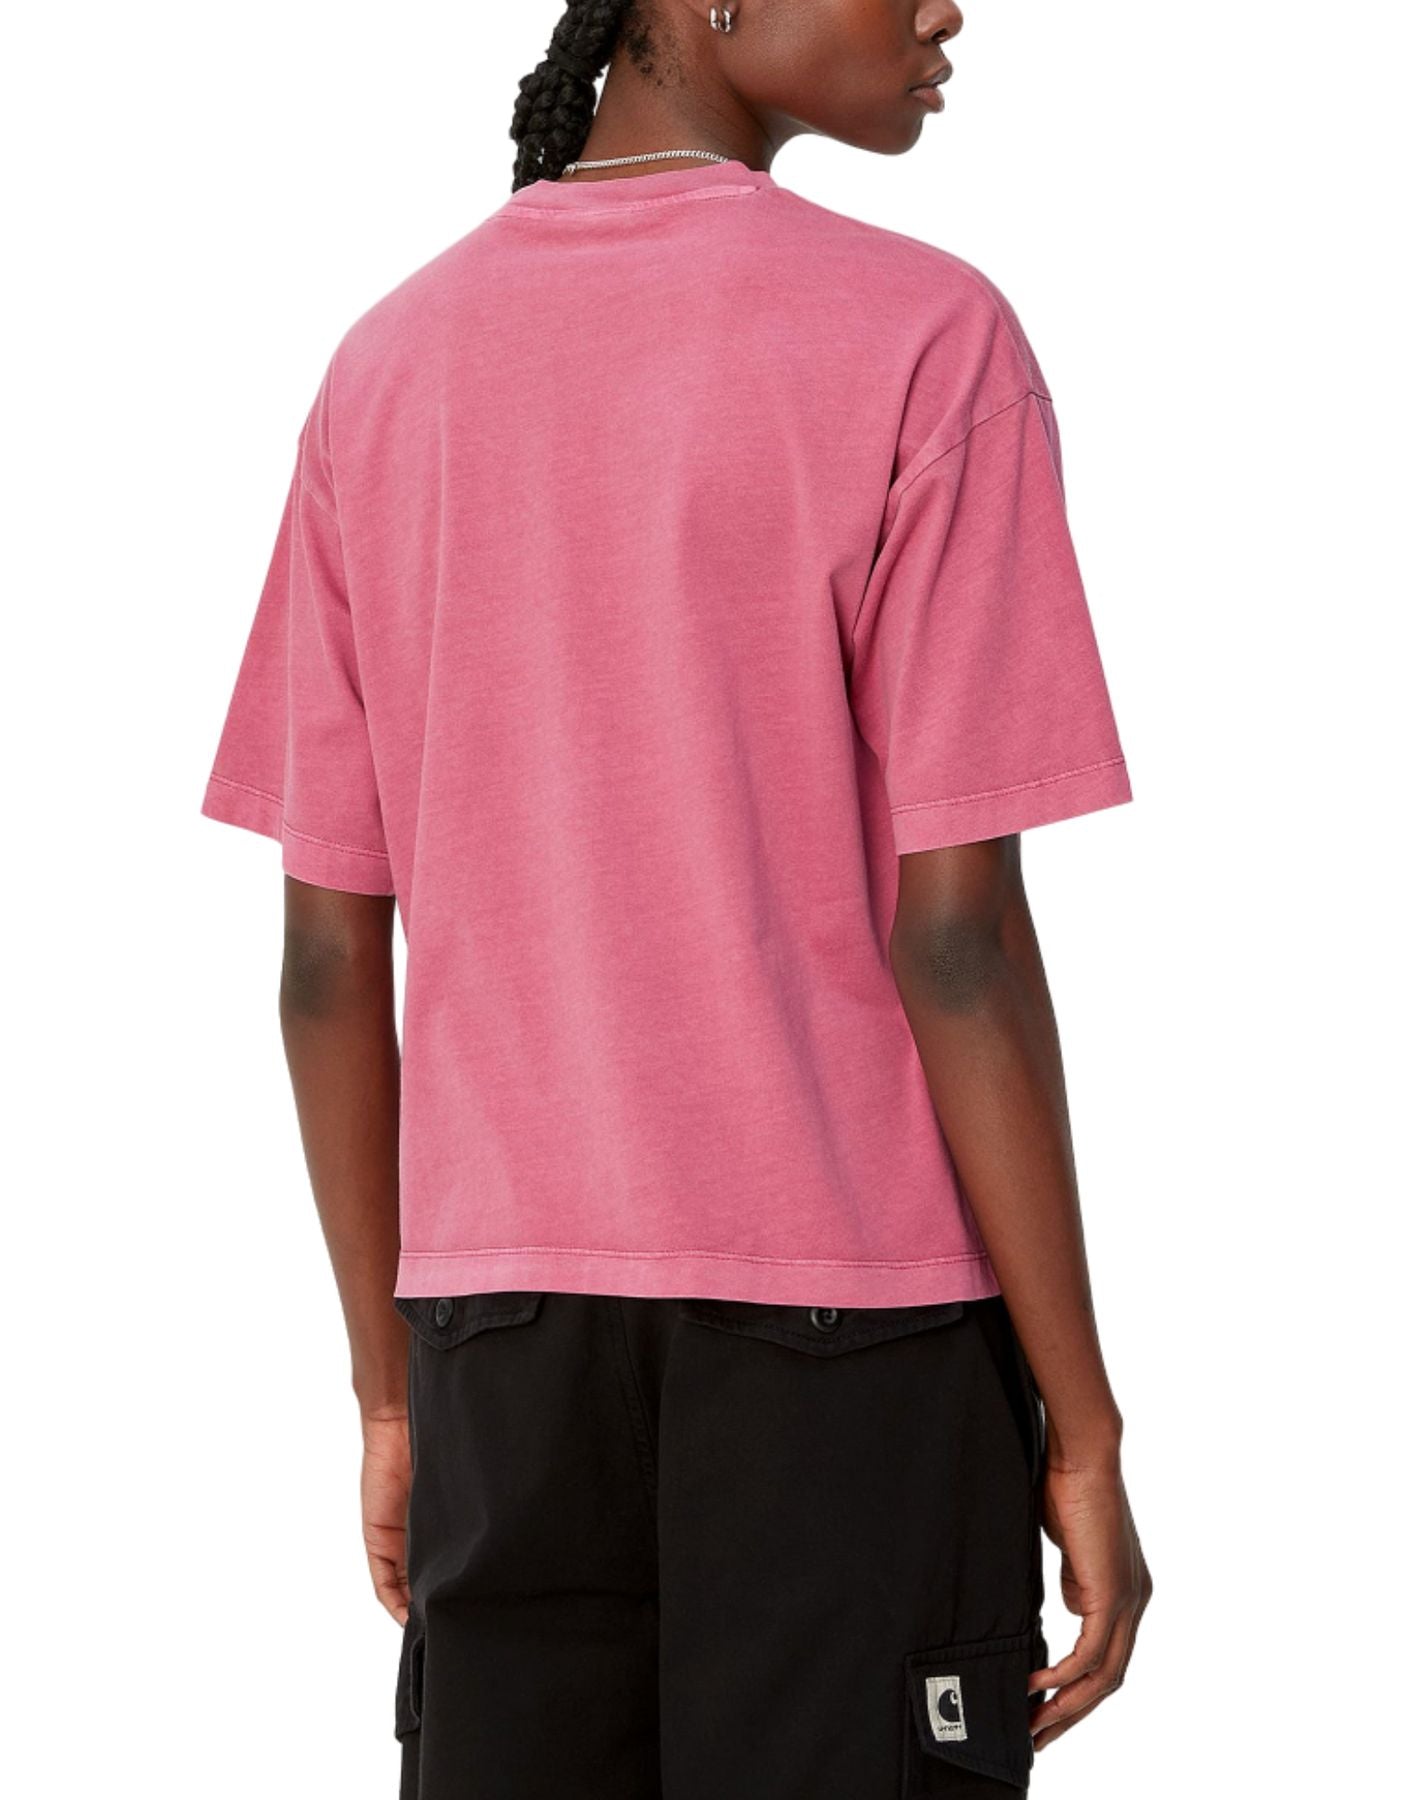 여성을위한 티셔츠 i033051 1yt.gd 핑크 CARHARTT WIP